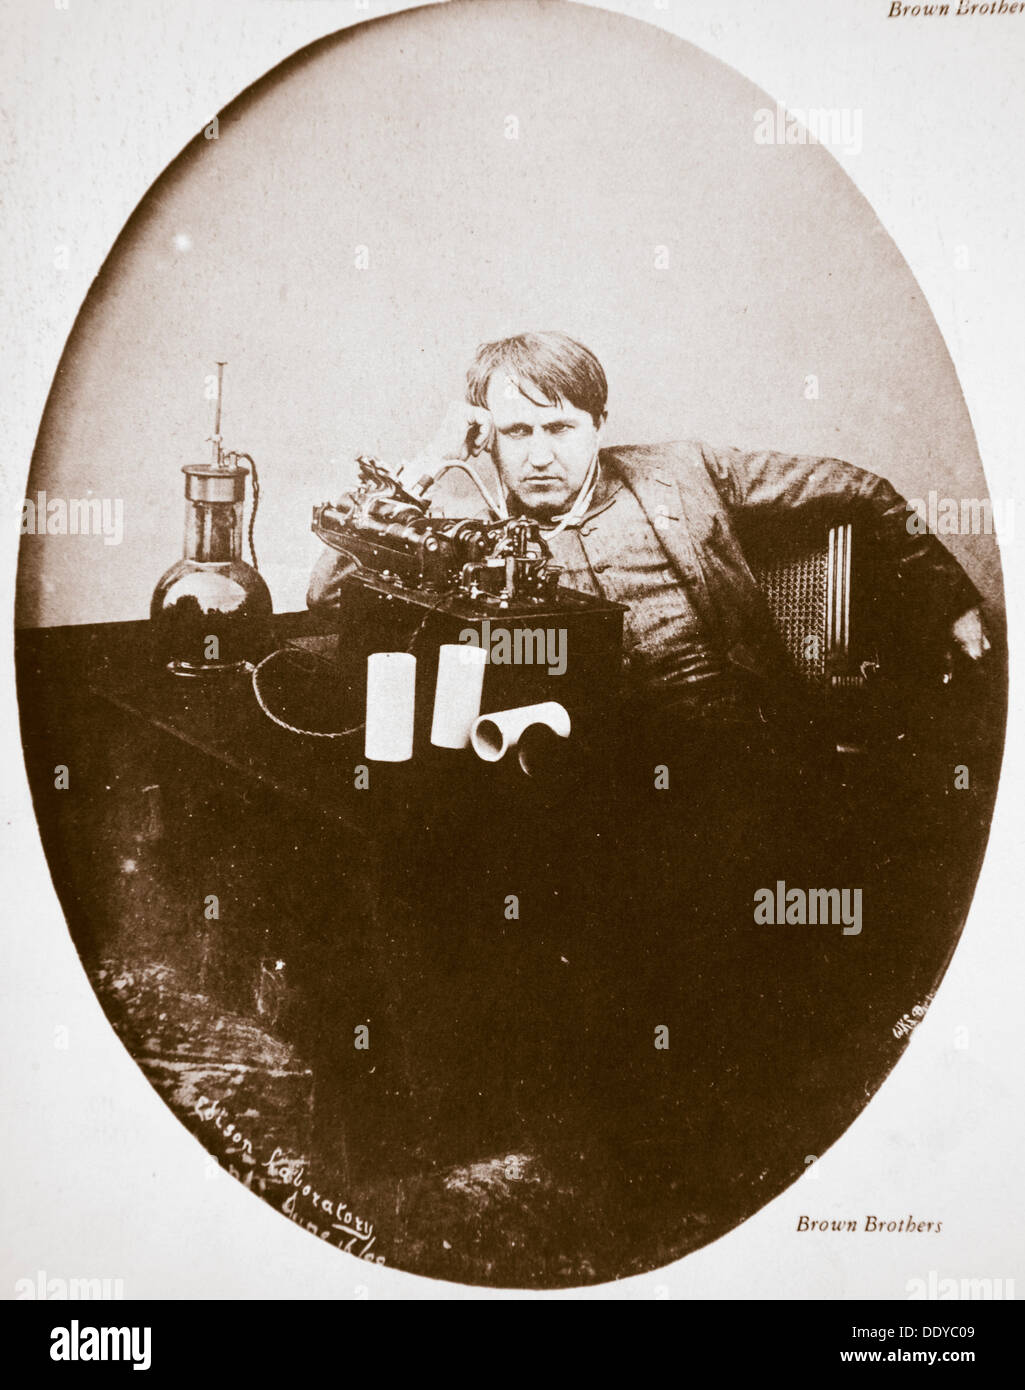 Thomas Alva Edison, inventeur américain, assis à côté de sa machine améliorée, 1889. Artiste : Inconnu Banque D'Images